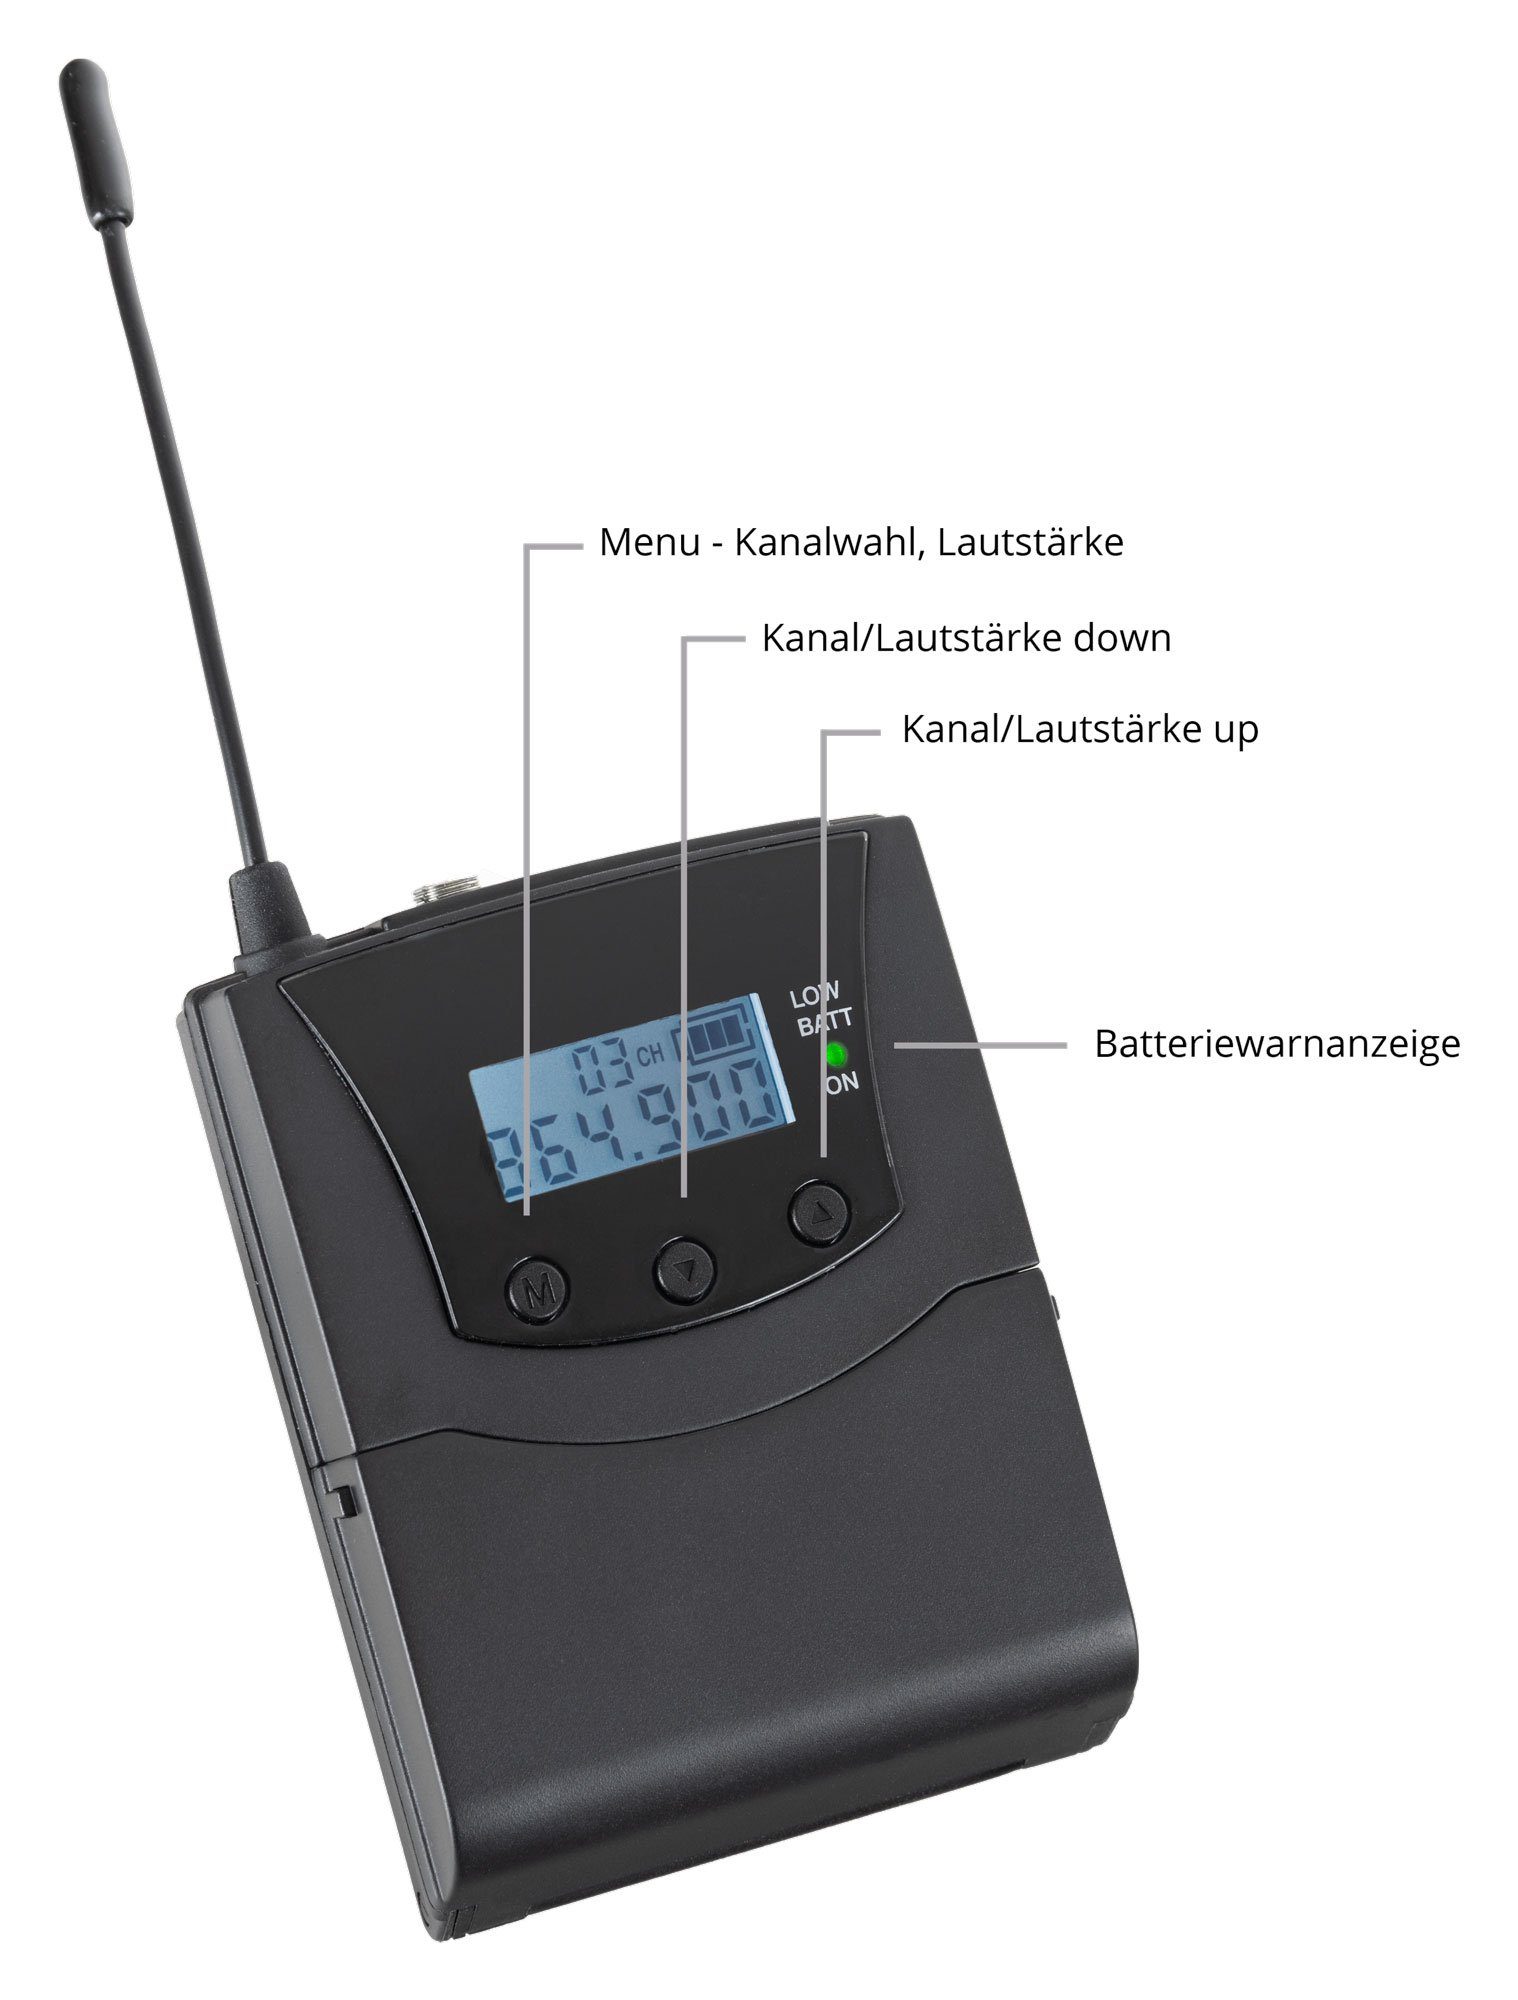 Verwendung mit (Stereo V2 3 Guide mit Funk-Empfänger Kanäle, empfangbare jedem Bodypack-Receiver Kopfhörer) SDR-BP30 Funk-Kopfhörer Silent Beatfoxx handelsüblichen zur UHF-Technik,